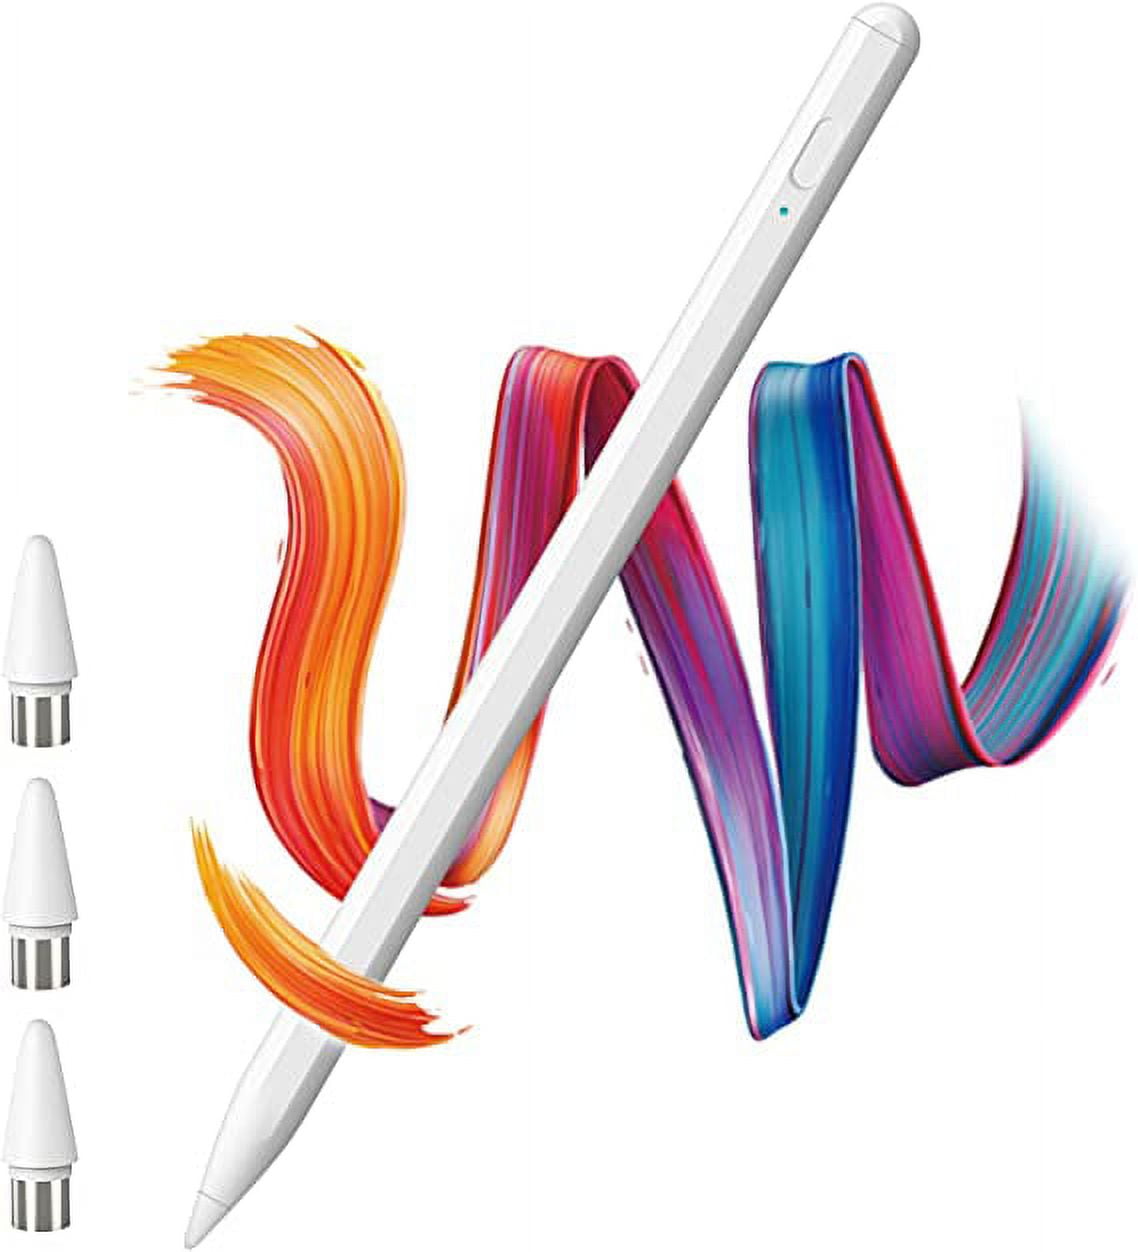 Stylus Pen Para iPad, Apple Pencil Para iPad 9.ª Generación